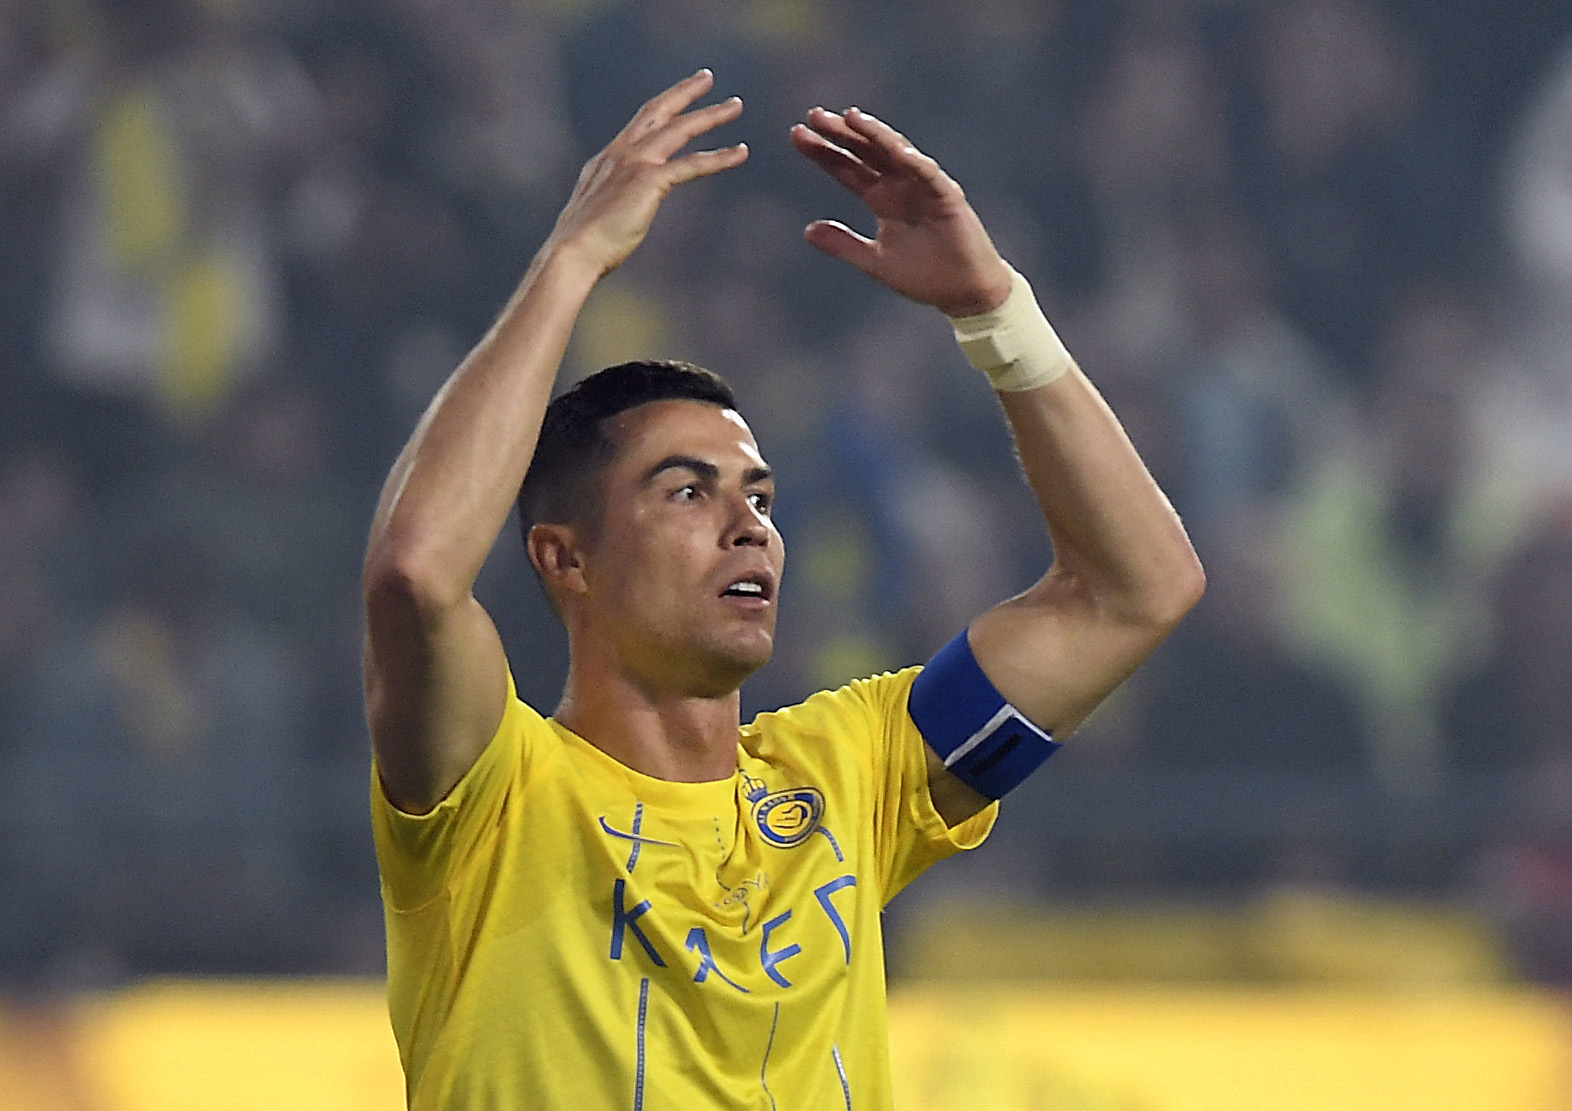 Ronaldo nhận án treo giò vì hành vi xấu xí, may mà Al Nassr vẫn chiến thắng